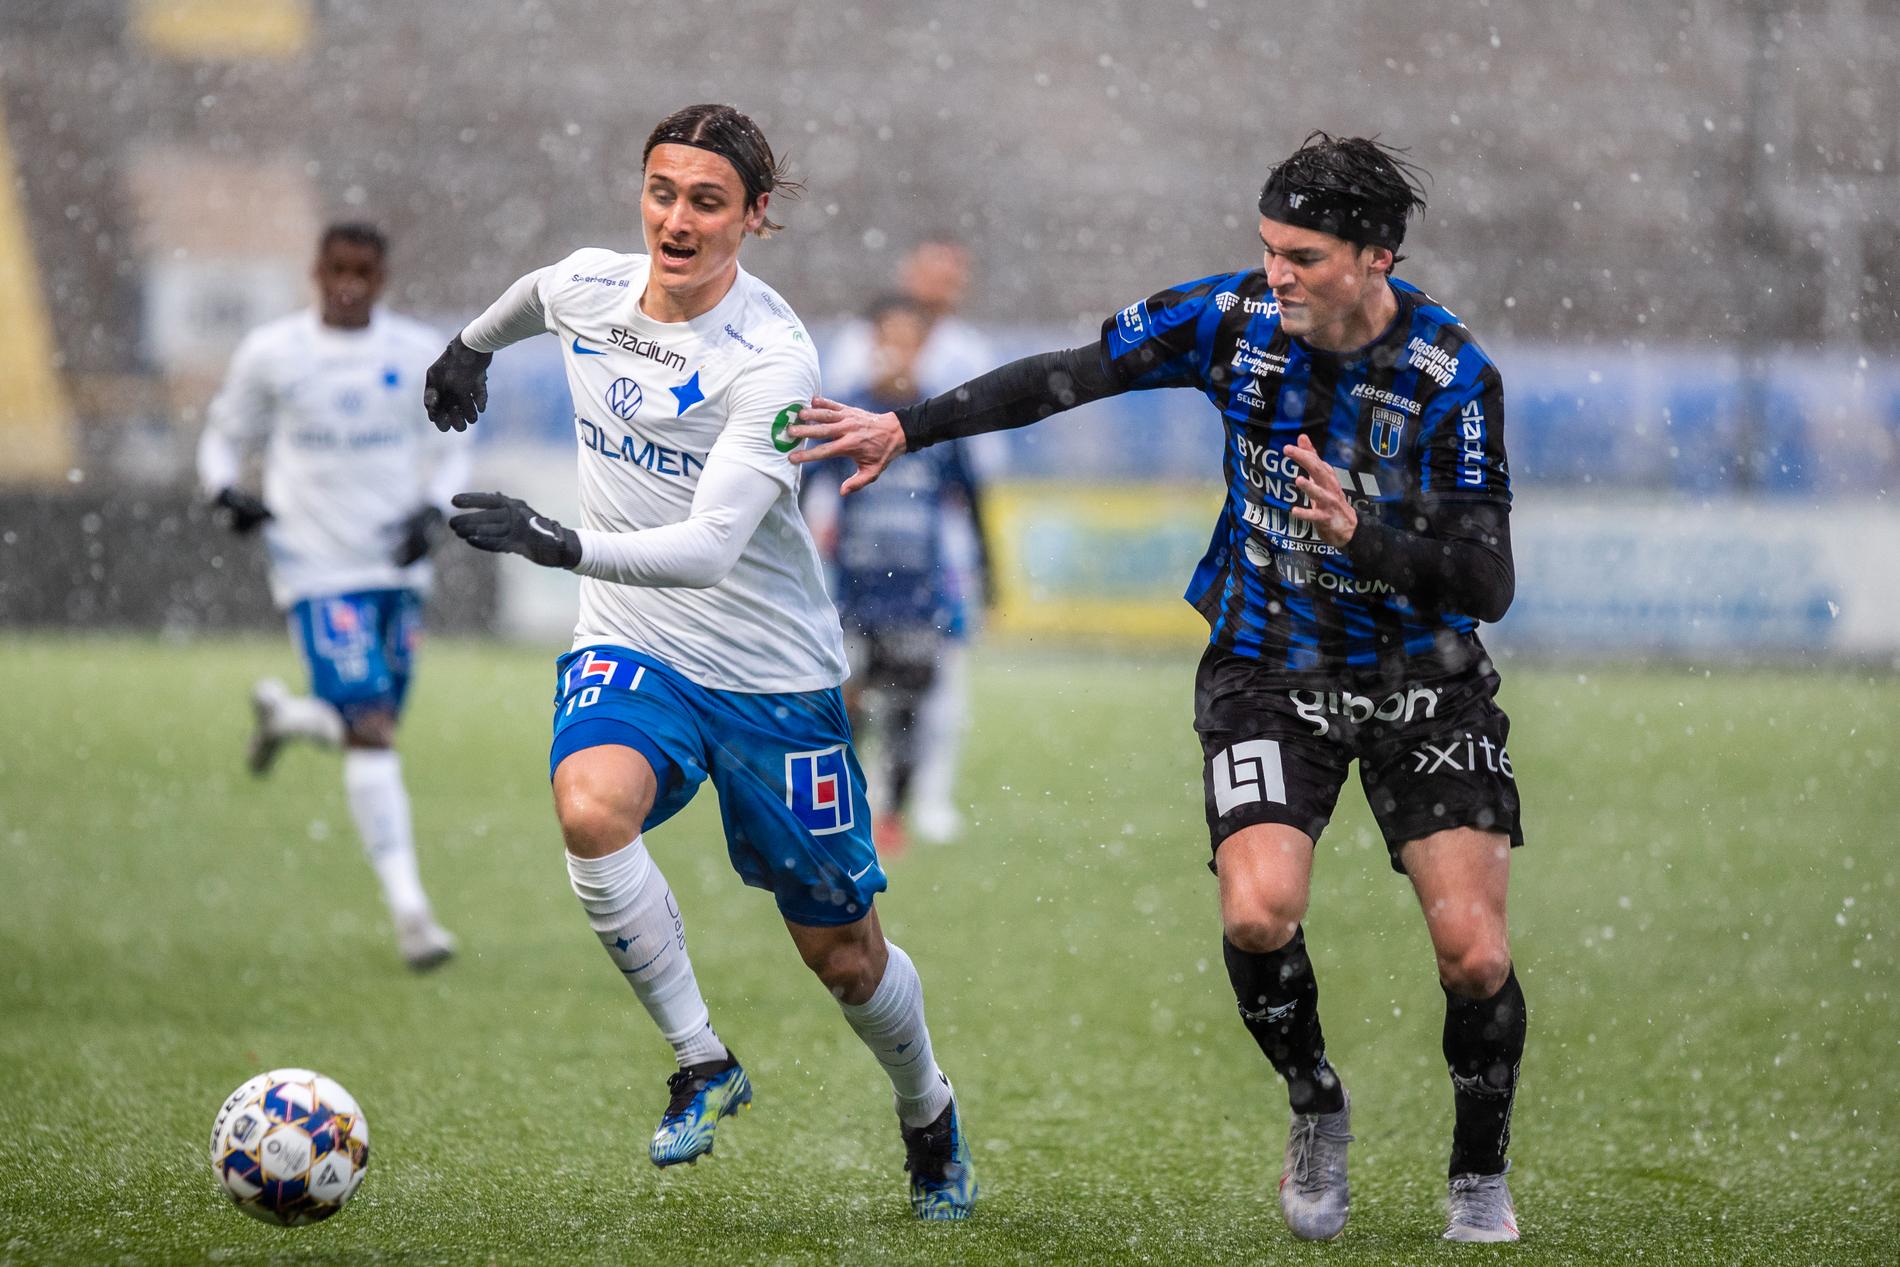 Det var riktigt snöoväder under matchen mellan Norrköping och Sirius.